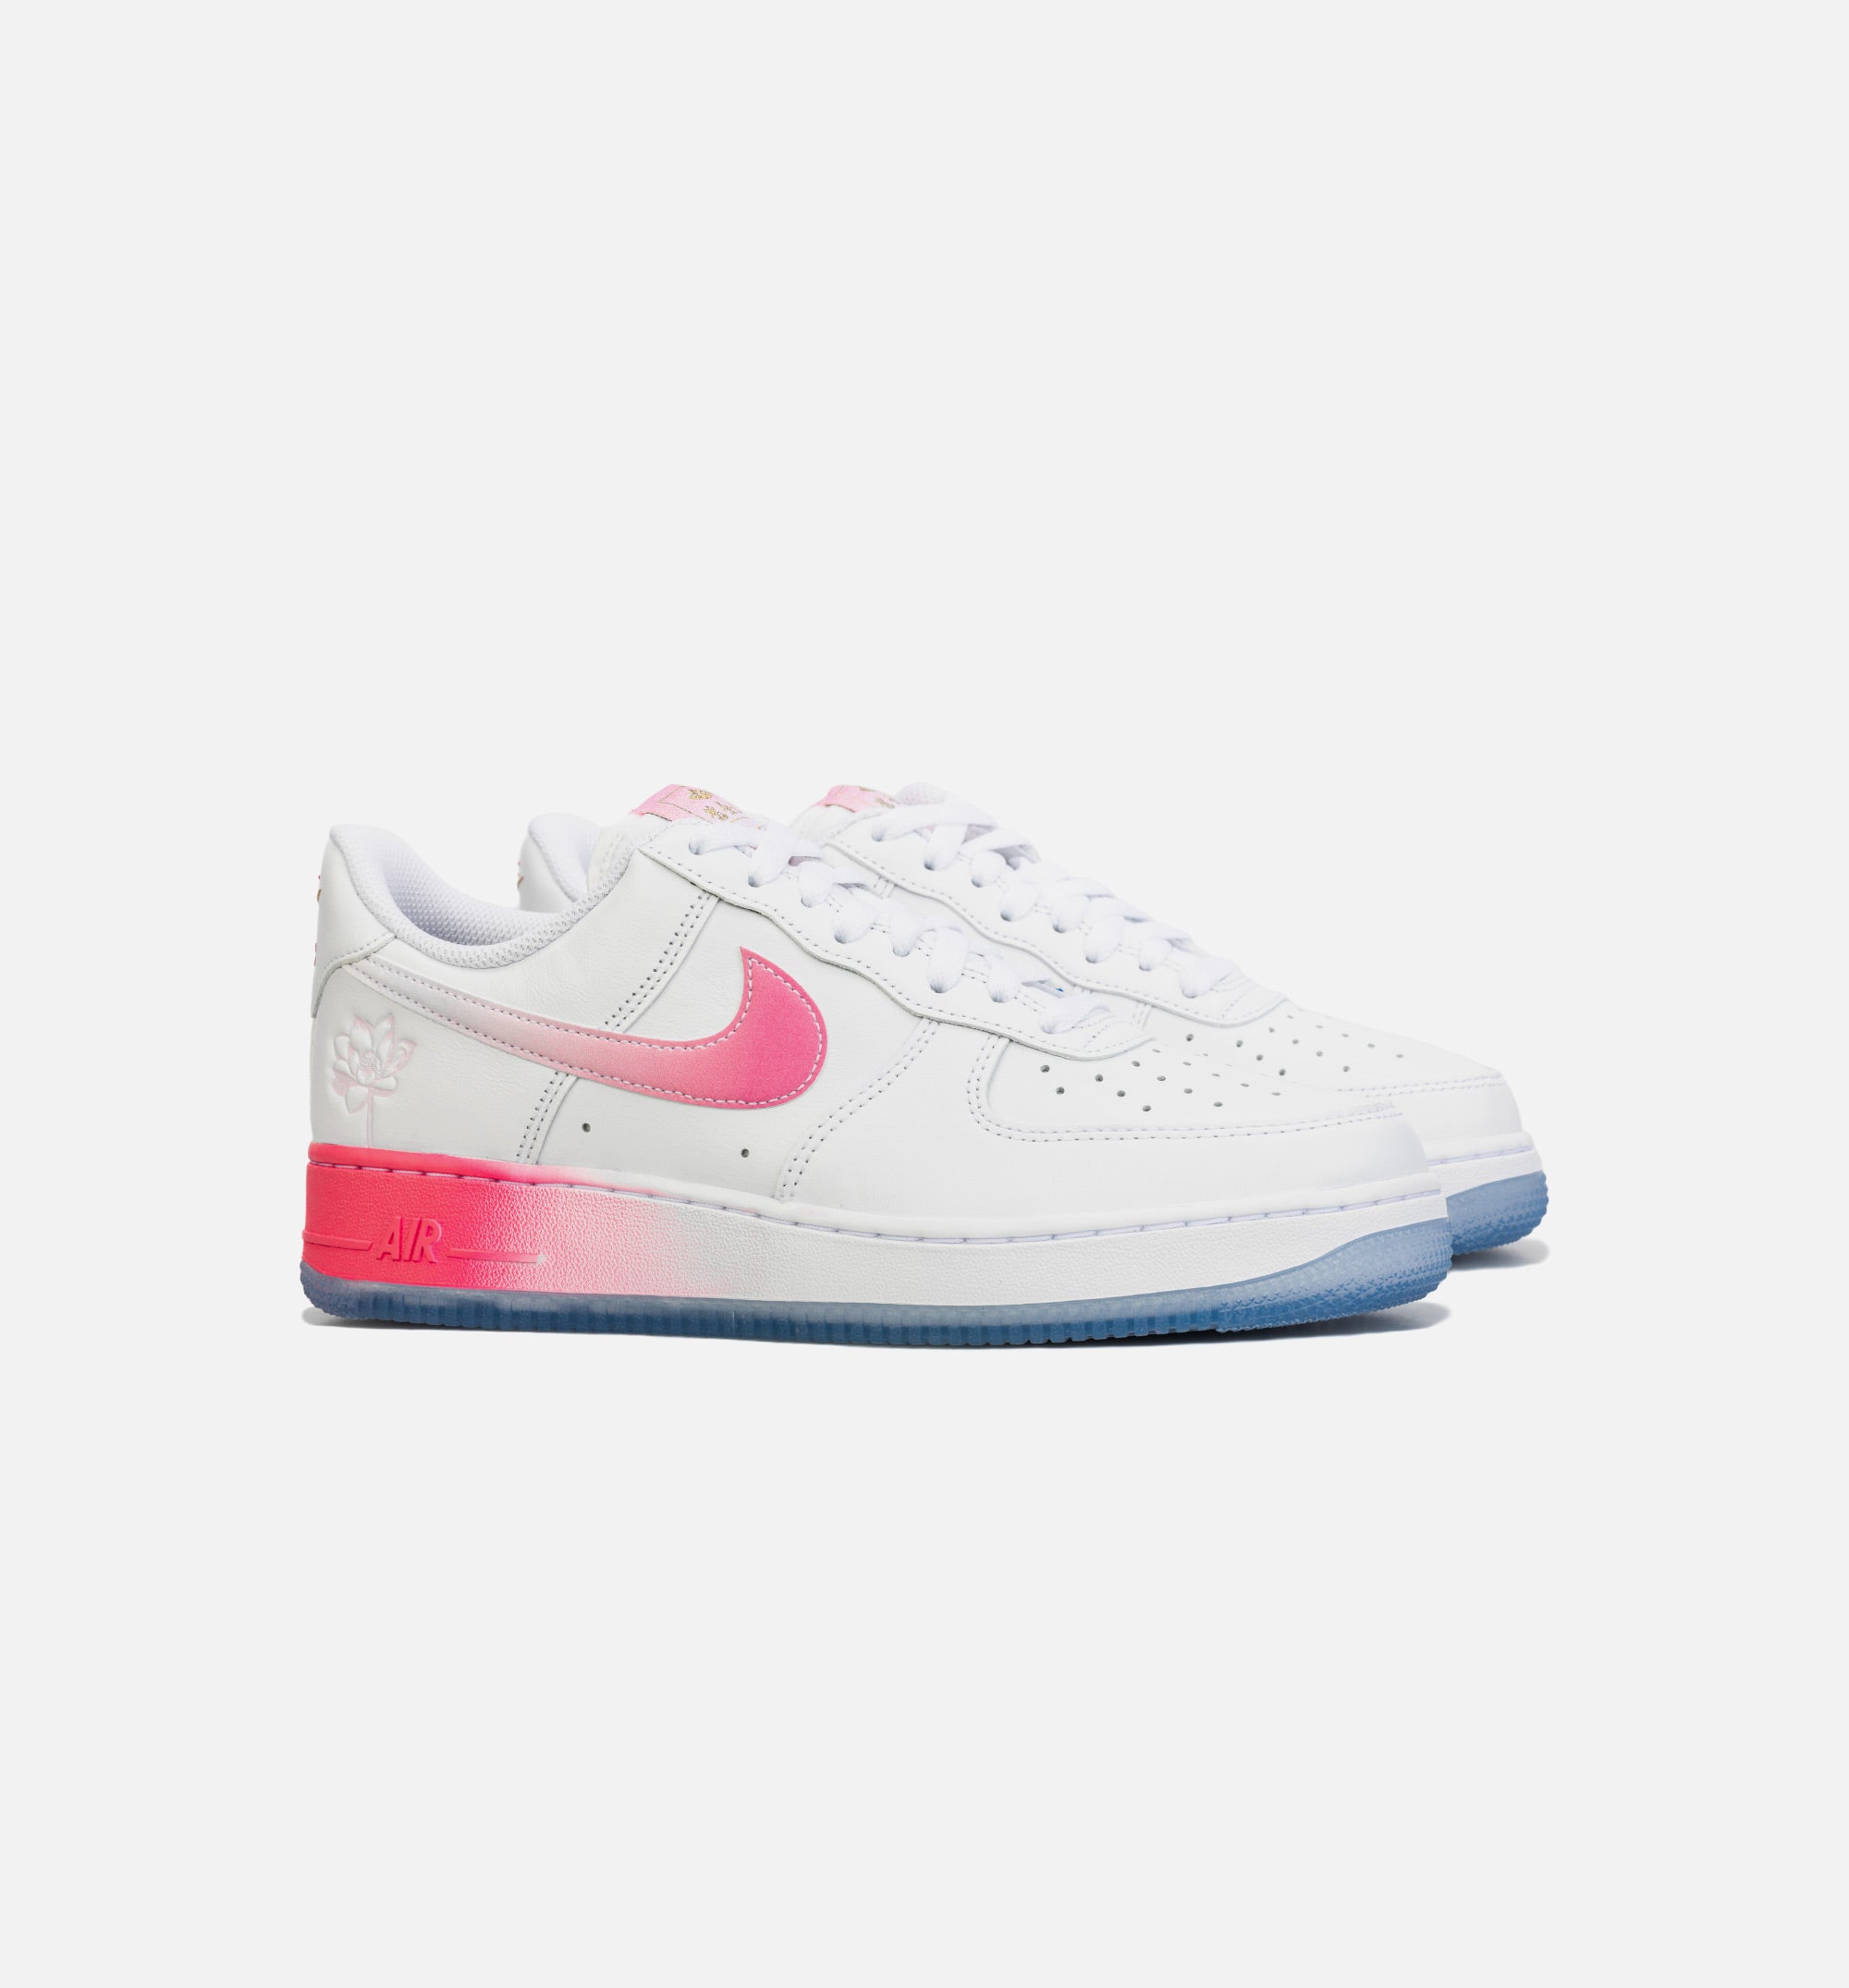 Nike Air Force 1 Low Lotus Flower Lifestyle Shoe - White/Pink – ShopNiceKicks.com